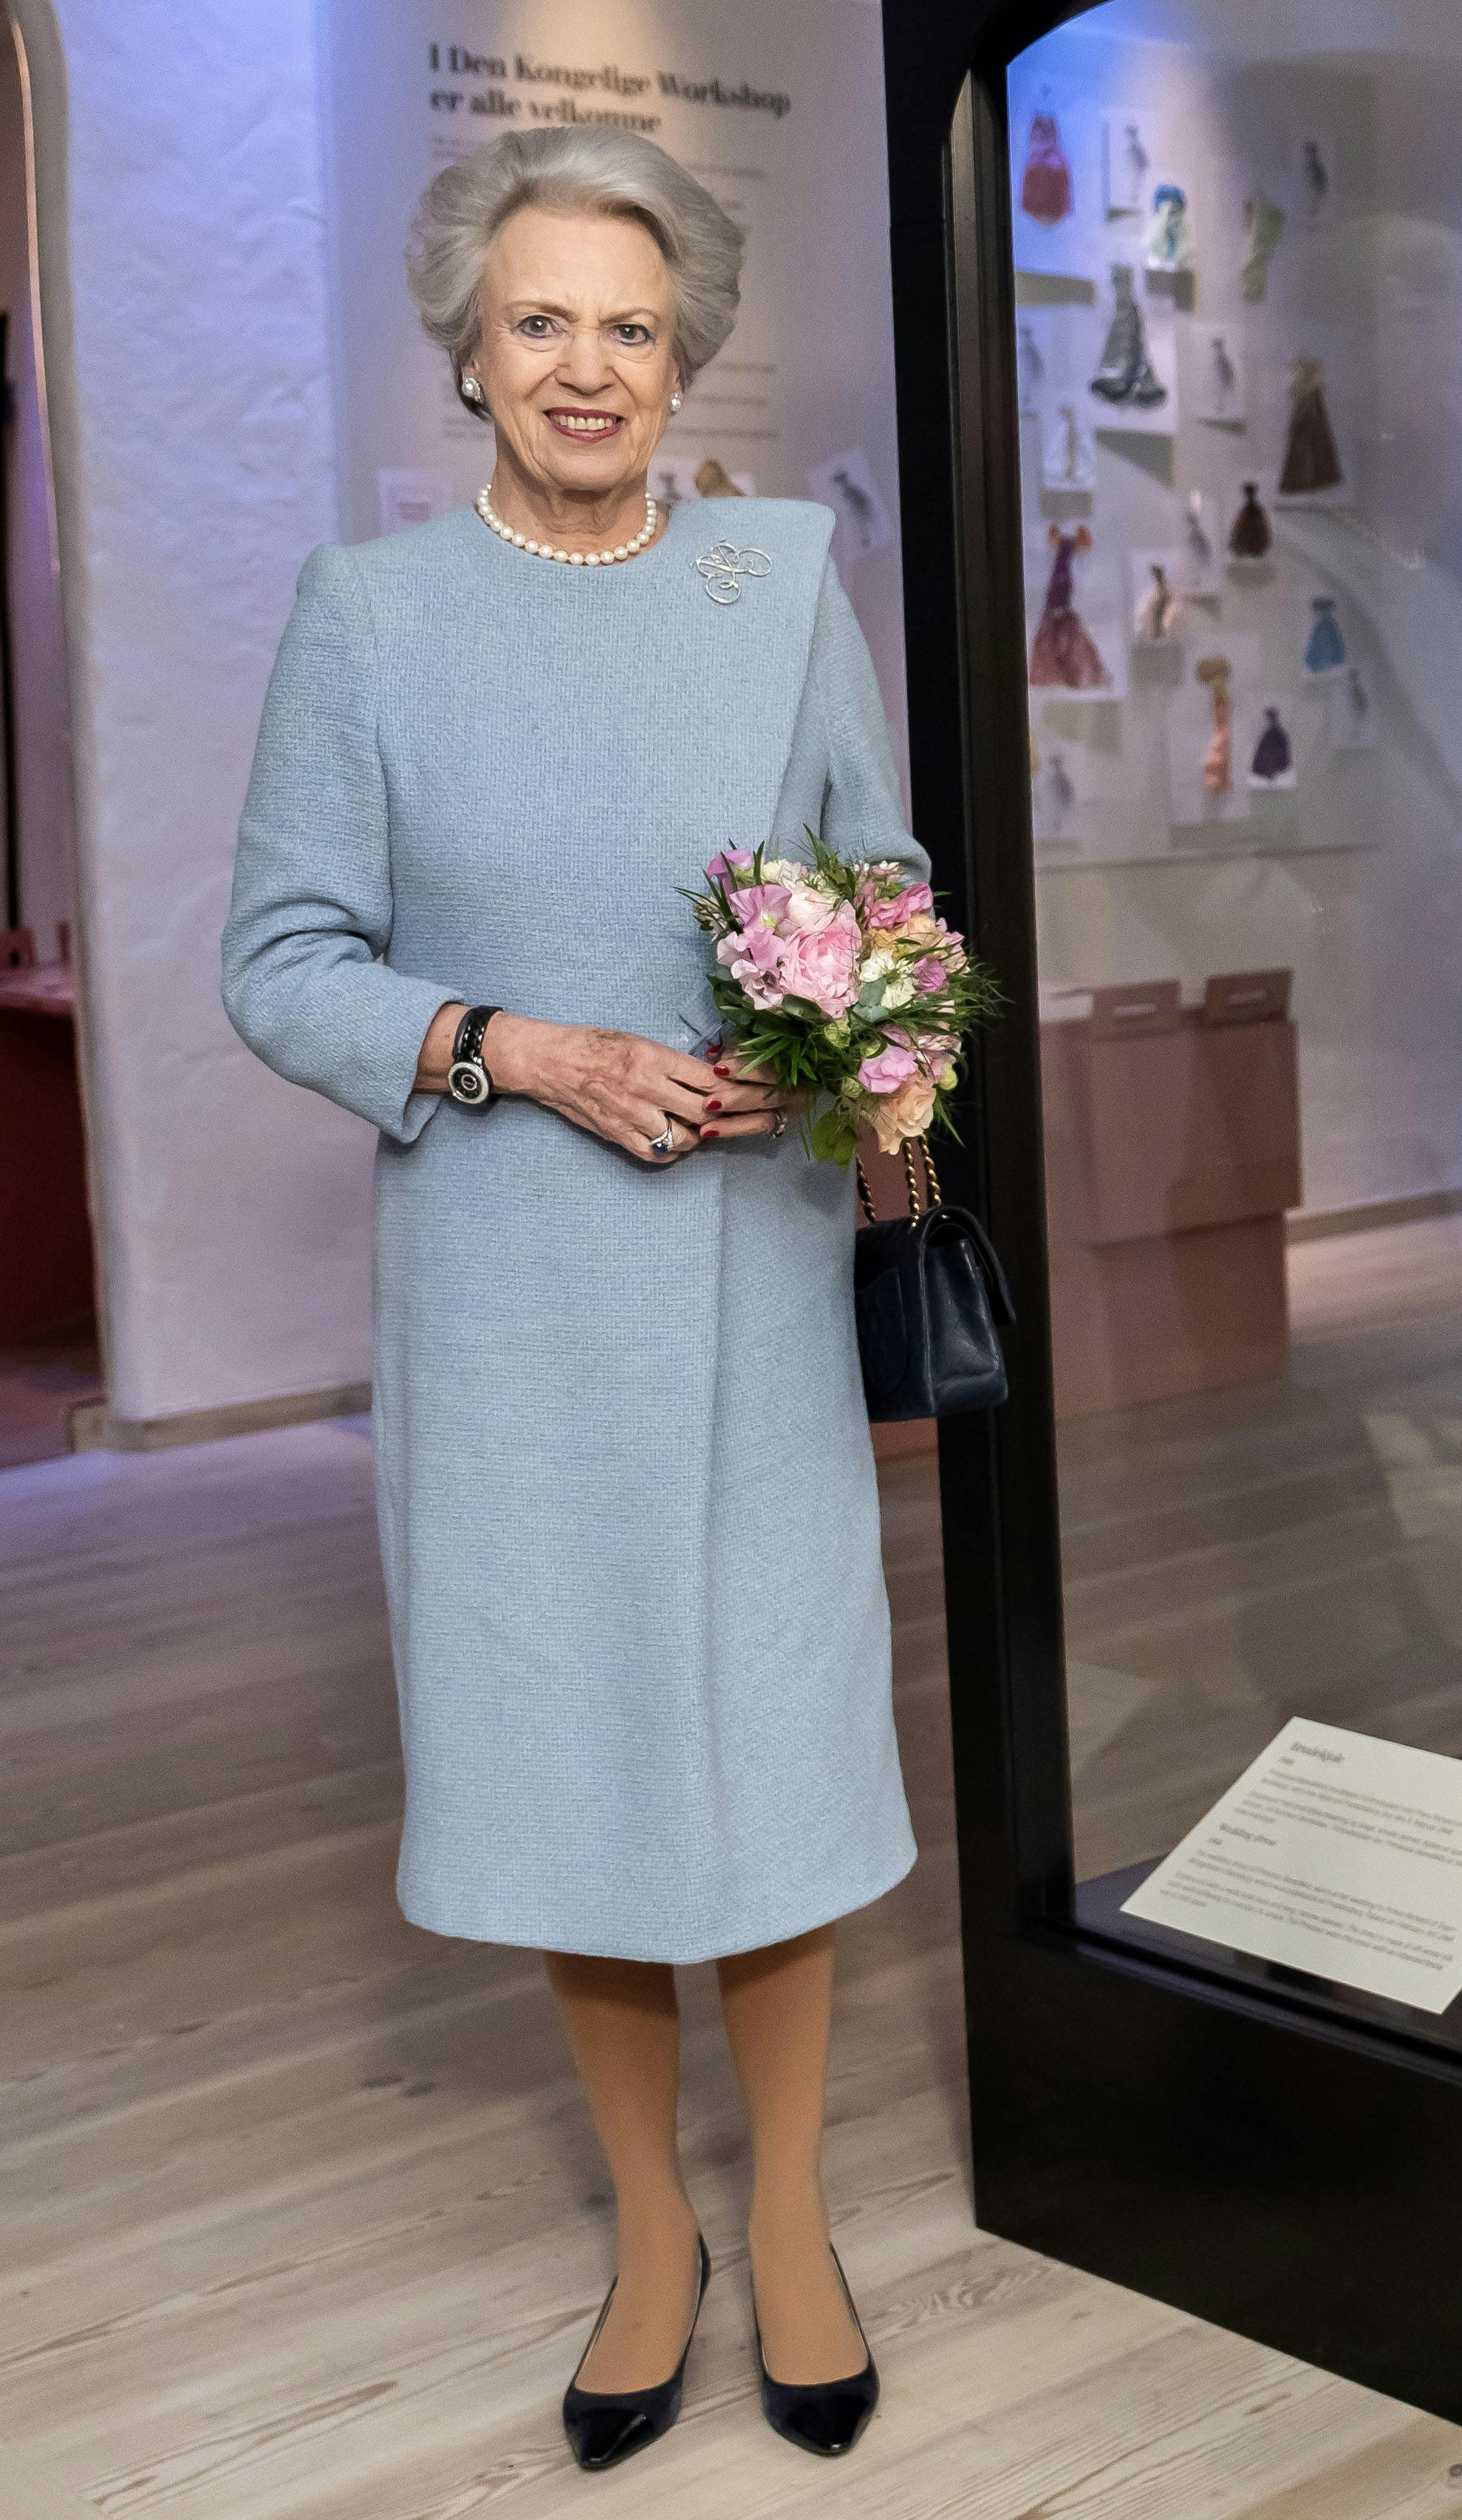 I anledning af prinsesse Benediktes runde fødselsdag har kongehuset delt et nyt billede af fødselaren